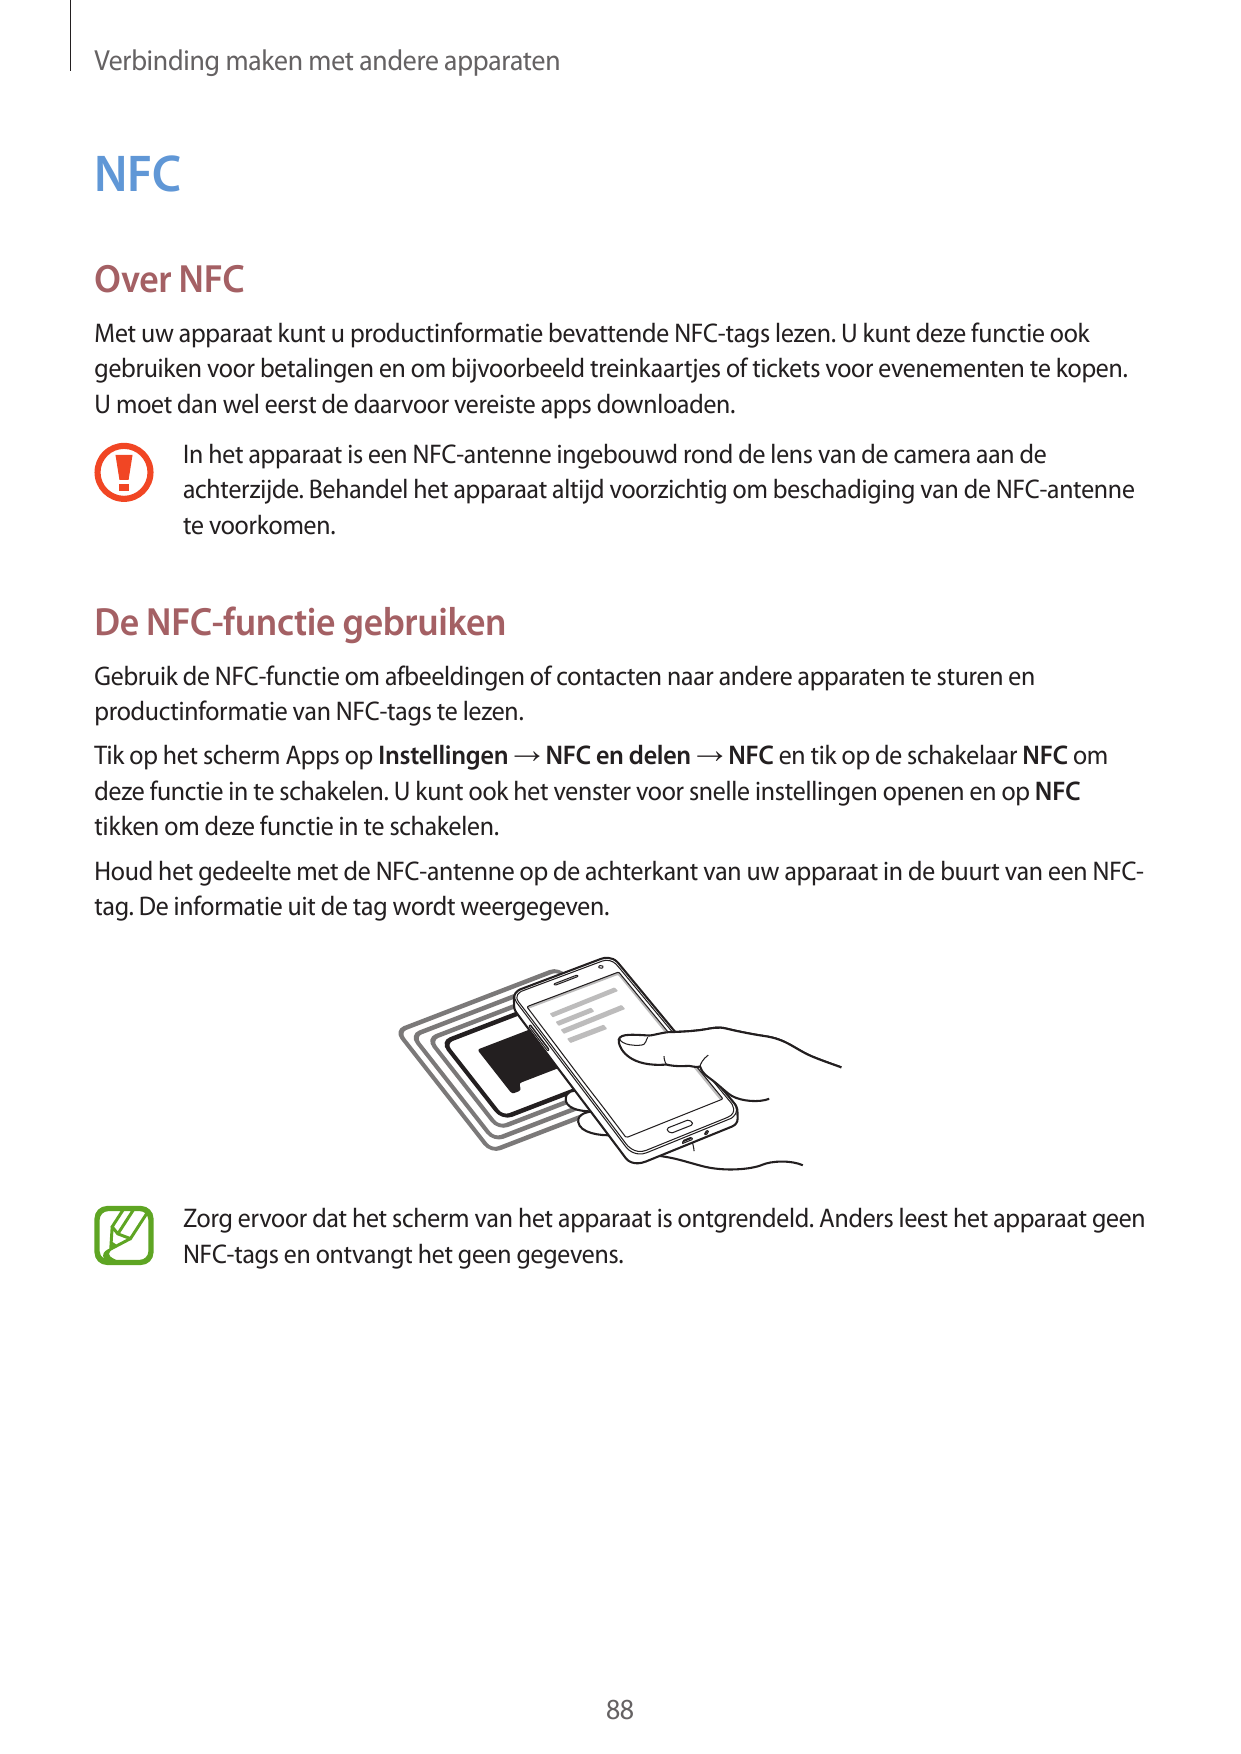 Verbinding maken met andere apparatenNFCOver NFCMet uw apparaat kunt u productinformatie bevattende NFC-tags lezen. U kunt deze 